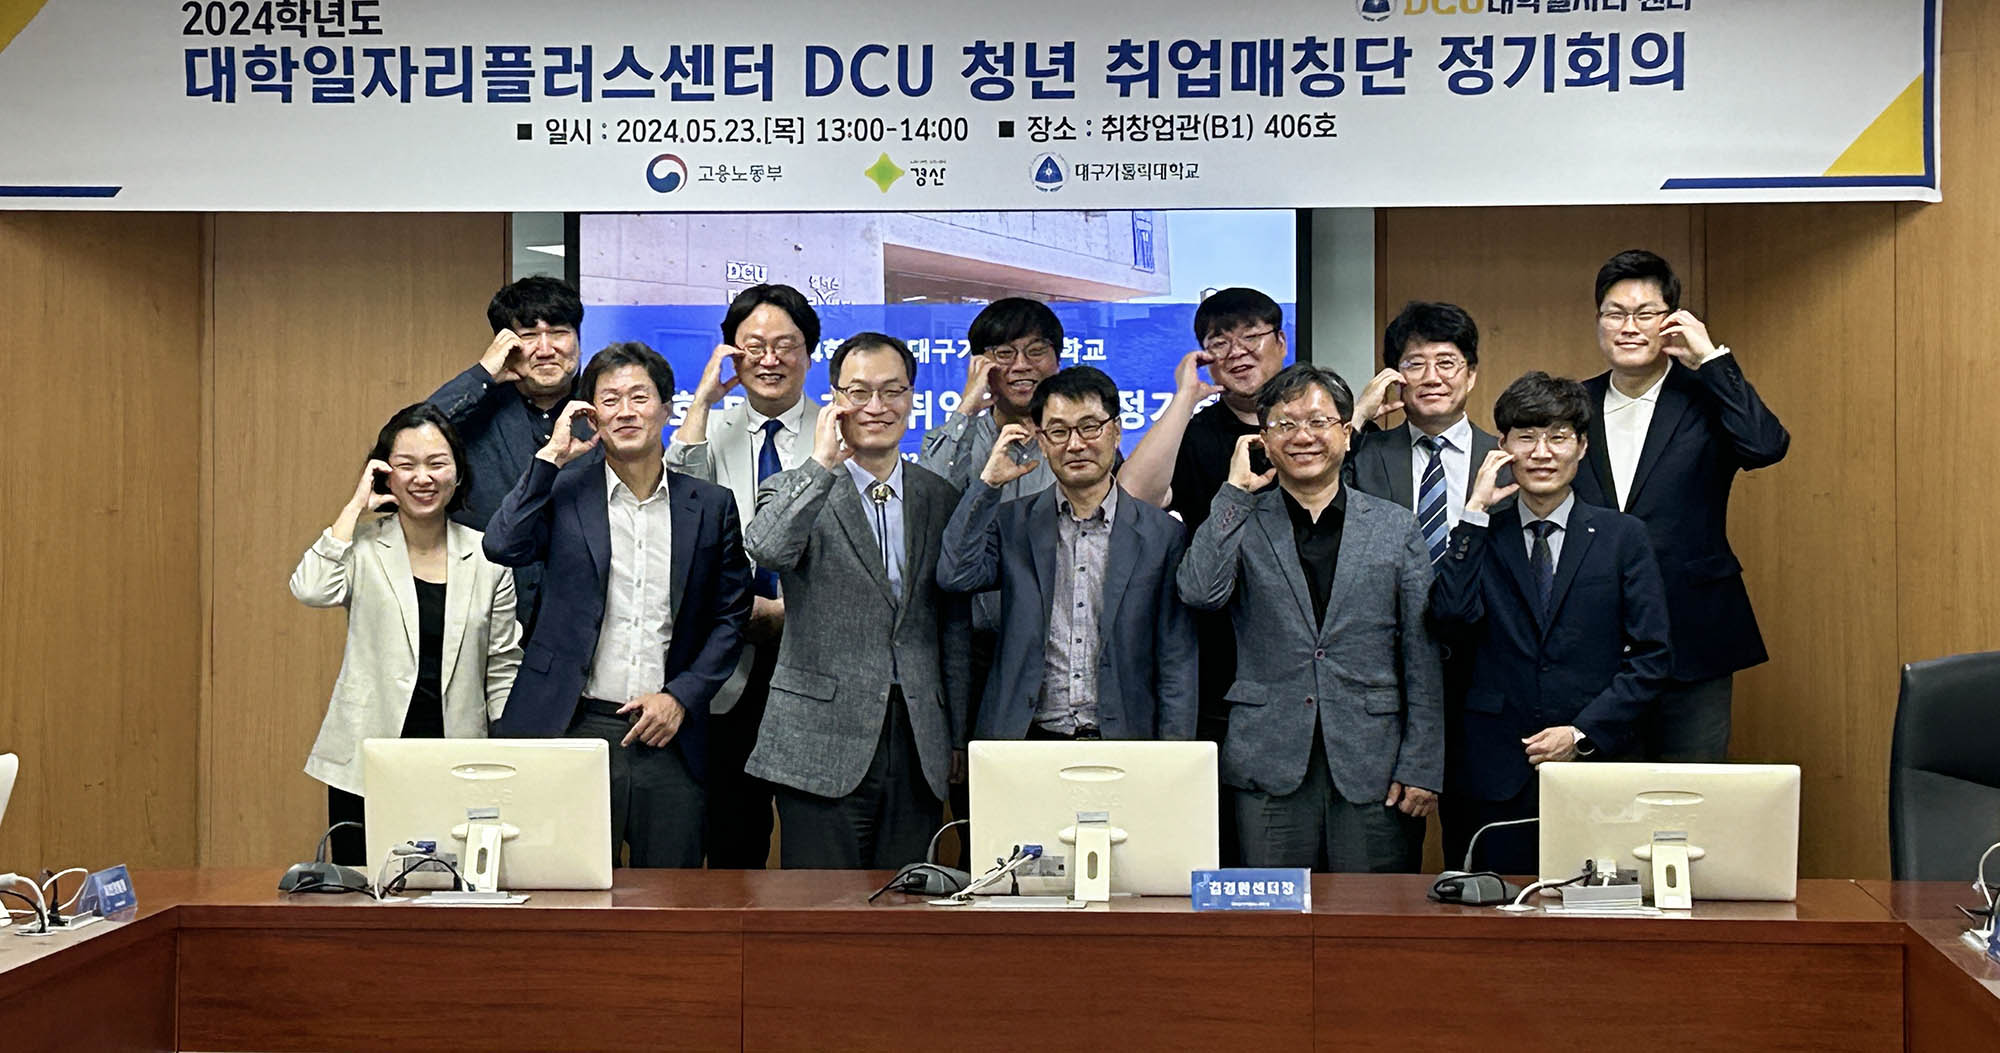 '대학일자리플러스센터 DCU청년취업매칭단' 위촉 및 정기회의 개최